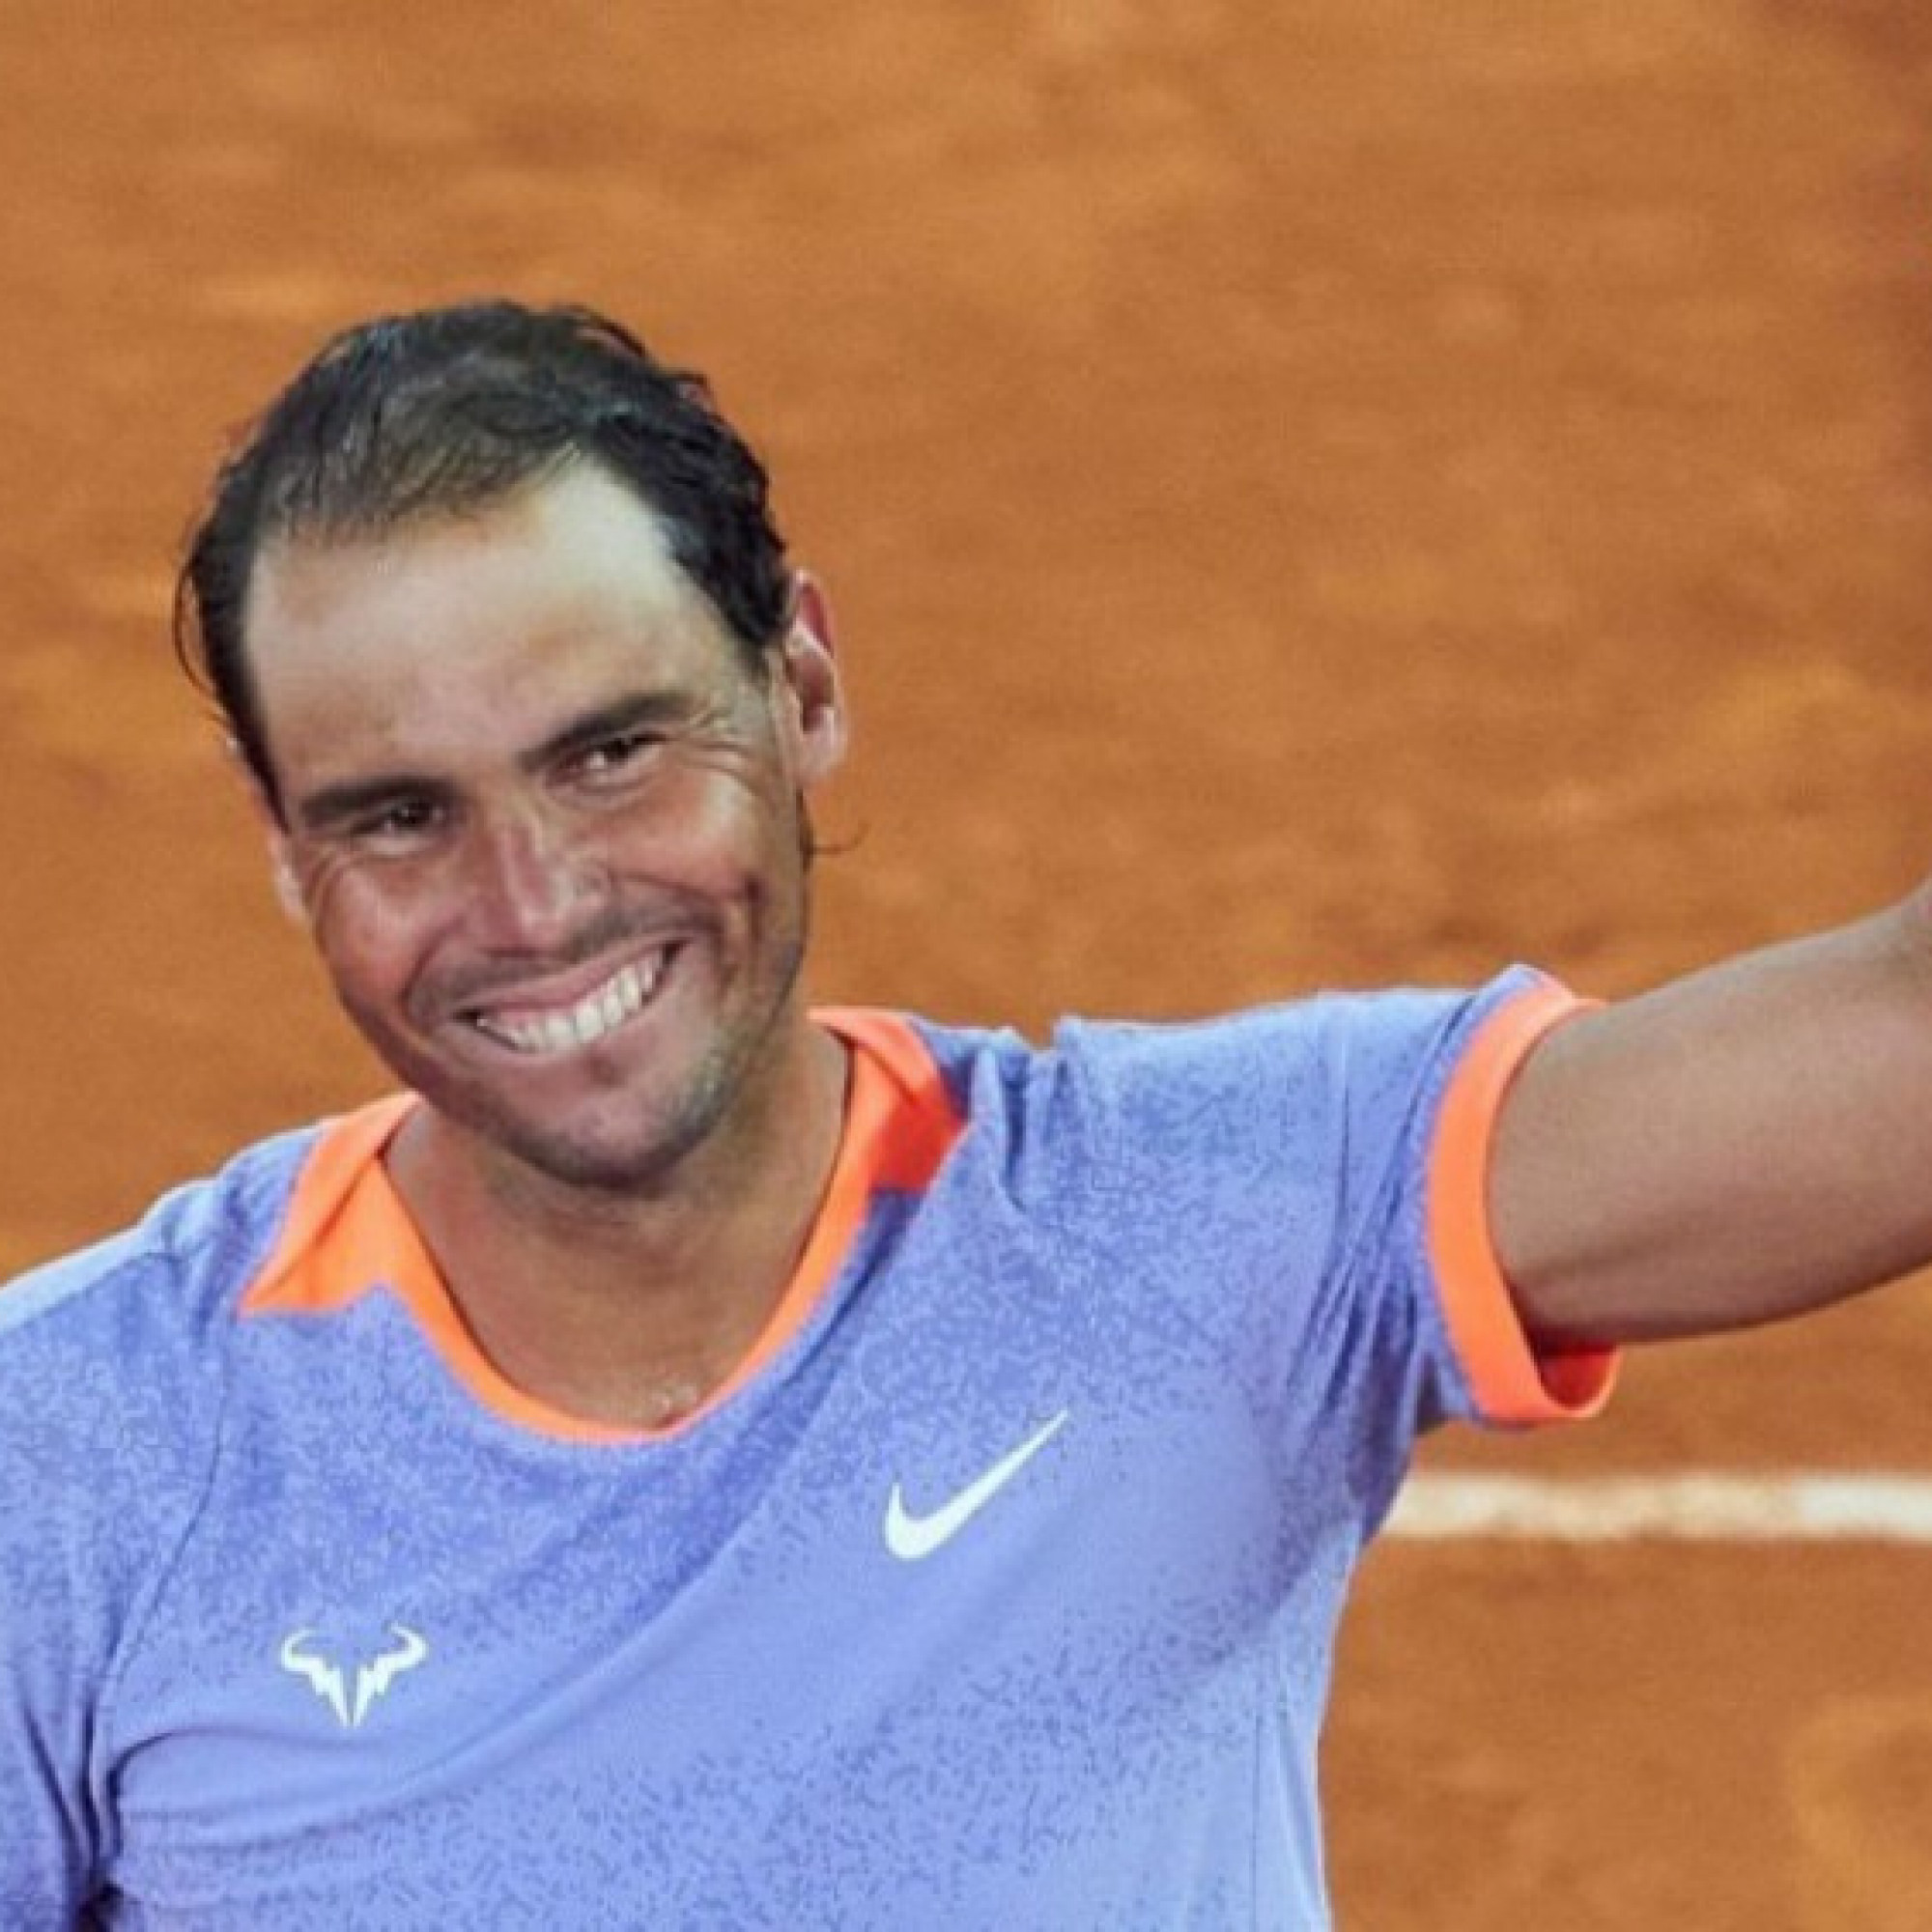  - Nóng nhất thể thao sáng 28/4: Nadal tăng 121 bậc ATP nhờ thắng 2 trận ở Madrid